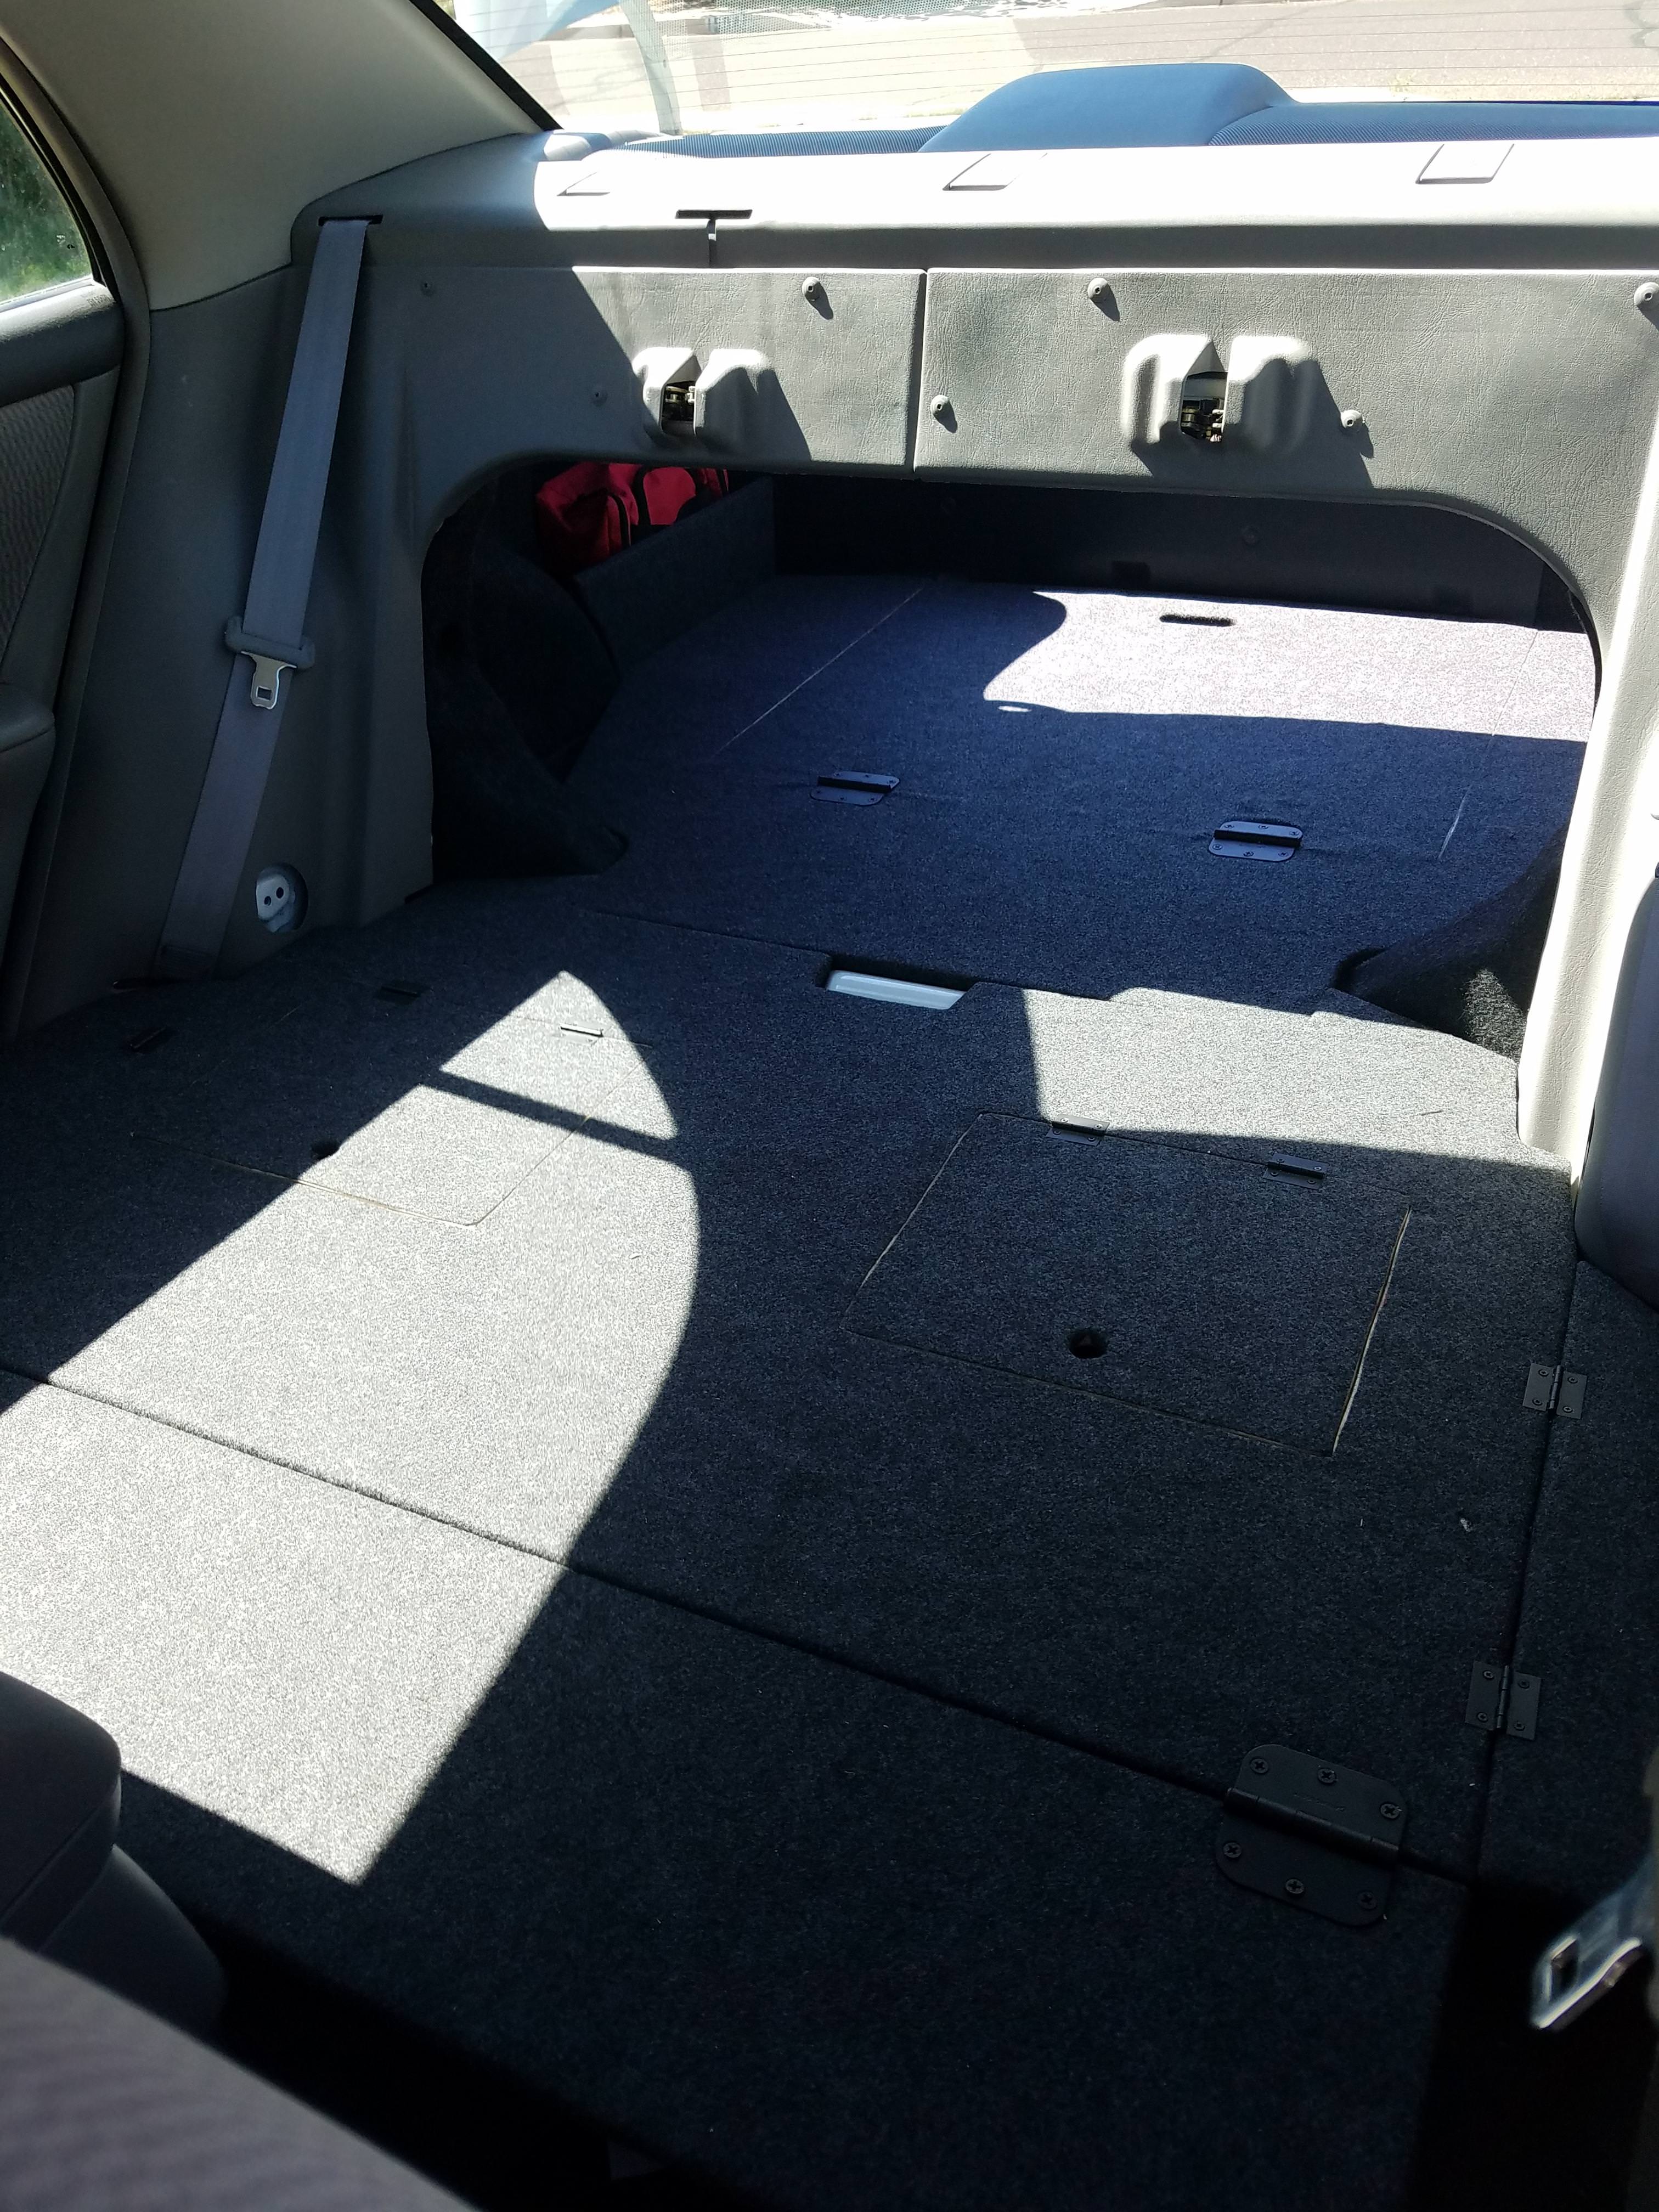 2020 Toyota Corolla Back Seat Fold down 